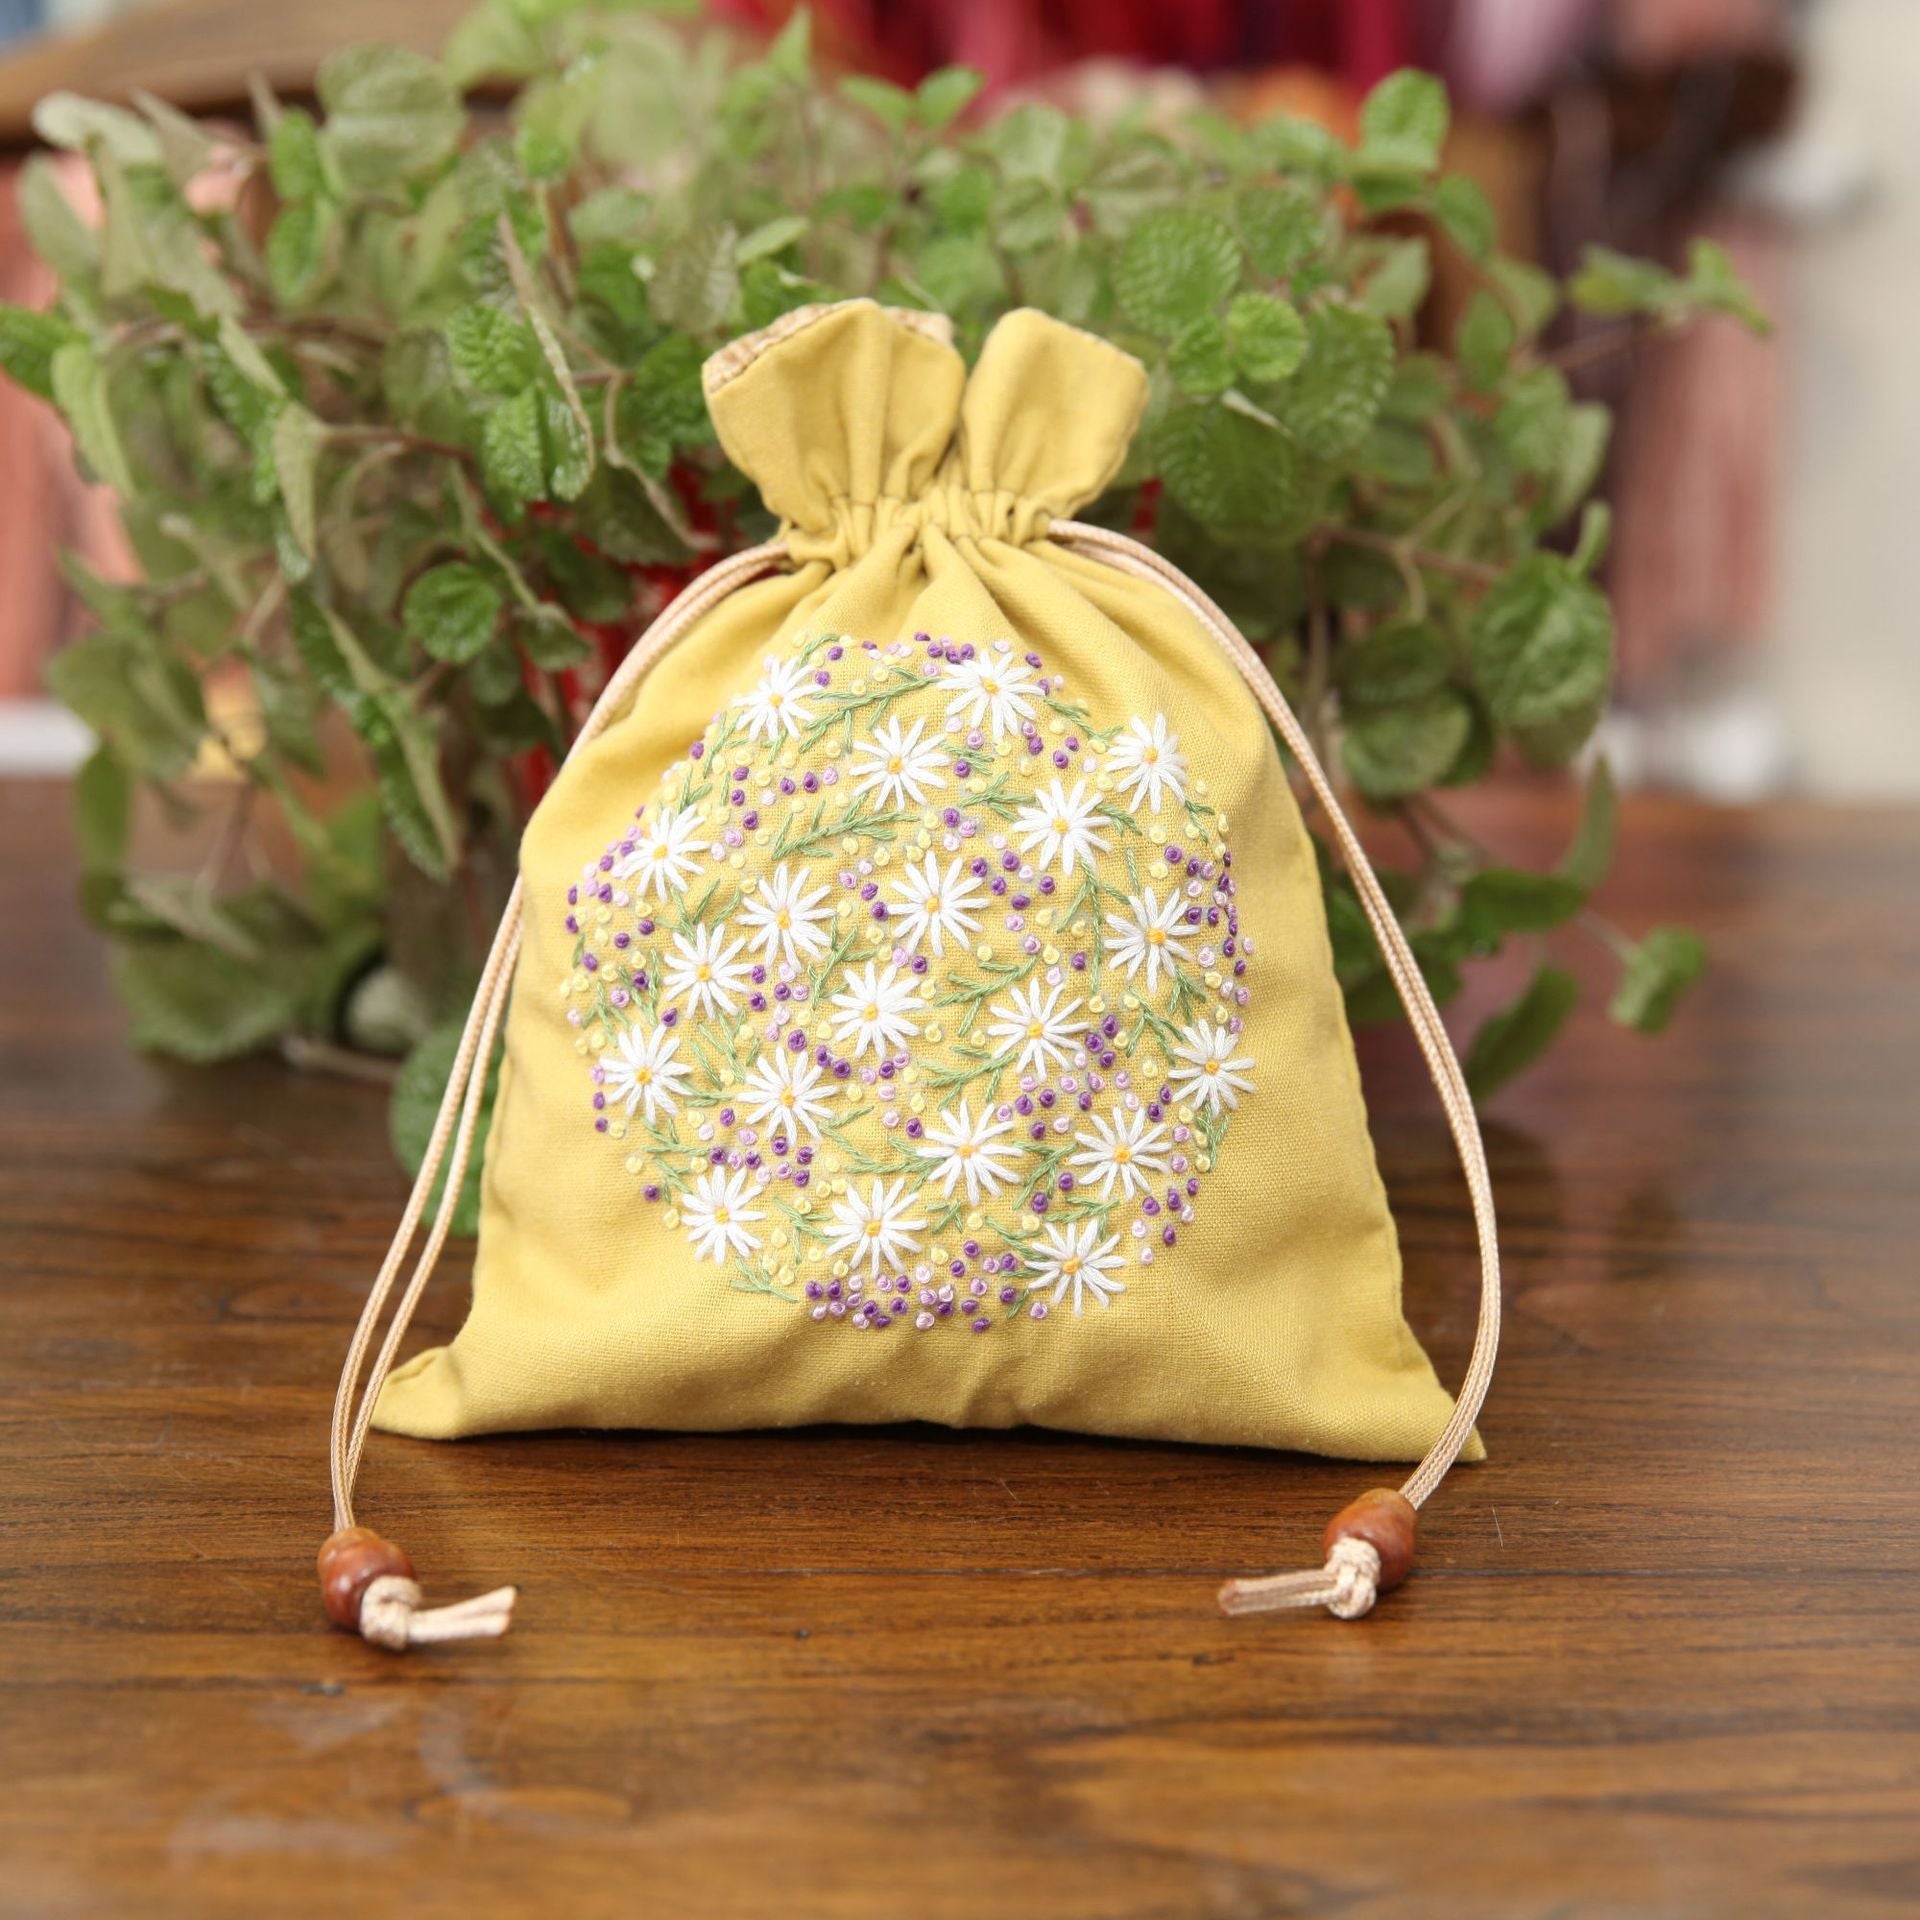 Sachet Bag Embroidery Art Kit - 1Pcs